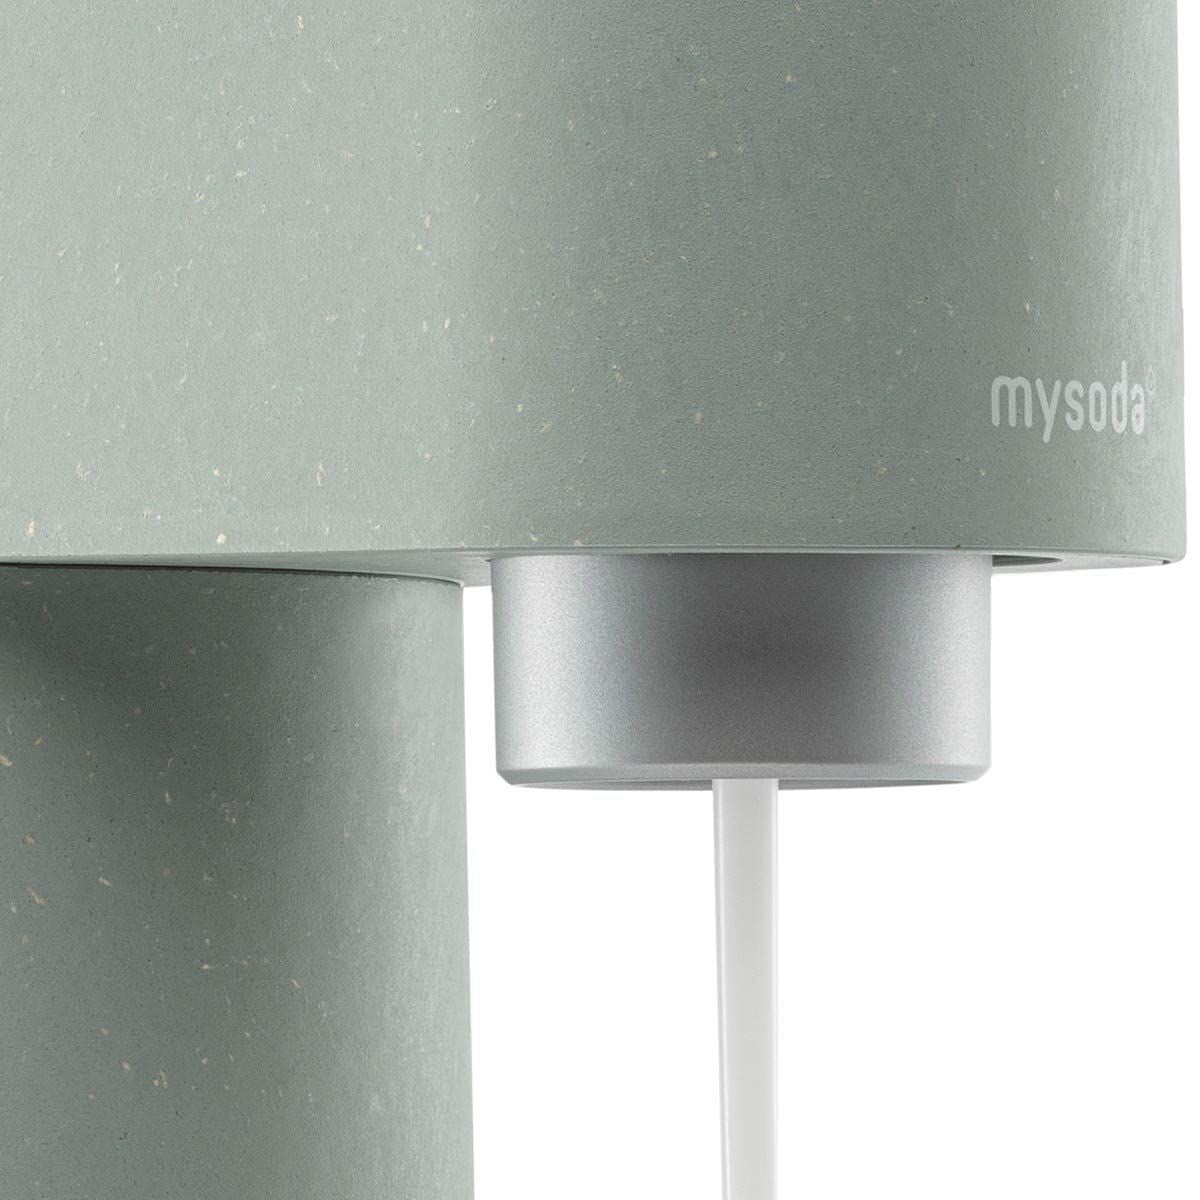 Ηλεκτρικό Φορητό Ψυγείο Θερμός Mysoda Woody Pigeon WD002F-GG